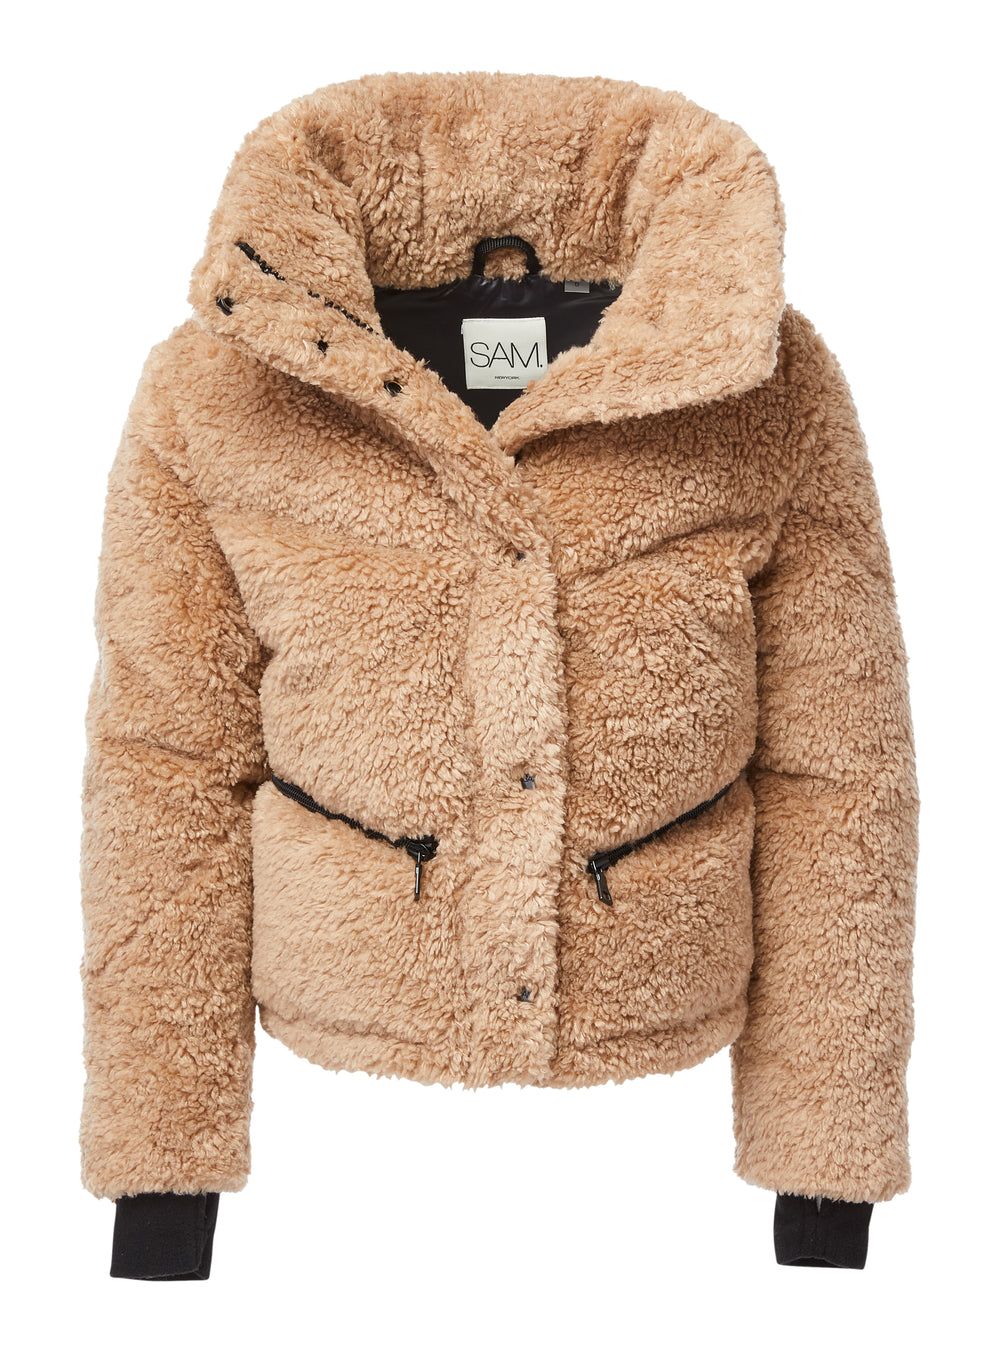 LA Sherpa Jacket - Camel  Sherpa jacket, Ny fashion week, Wear test